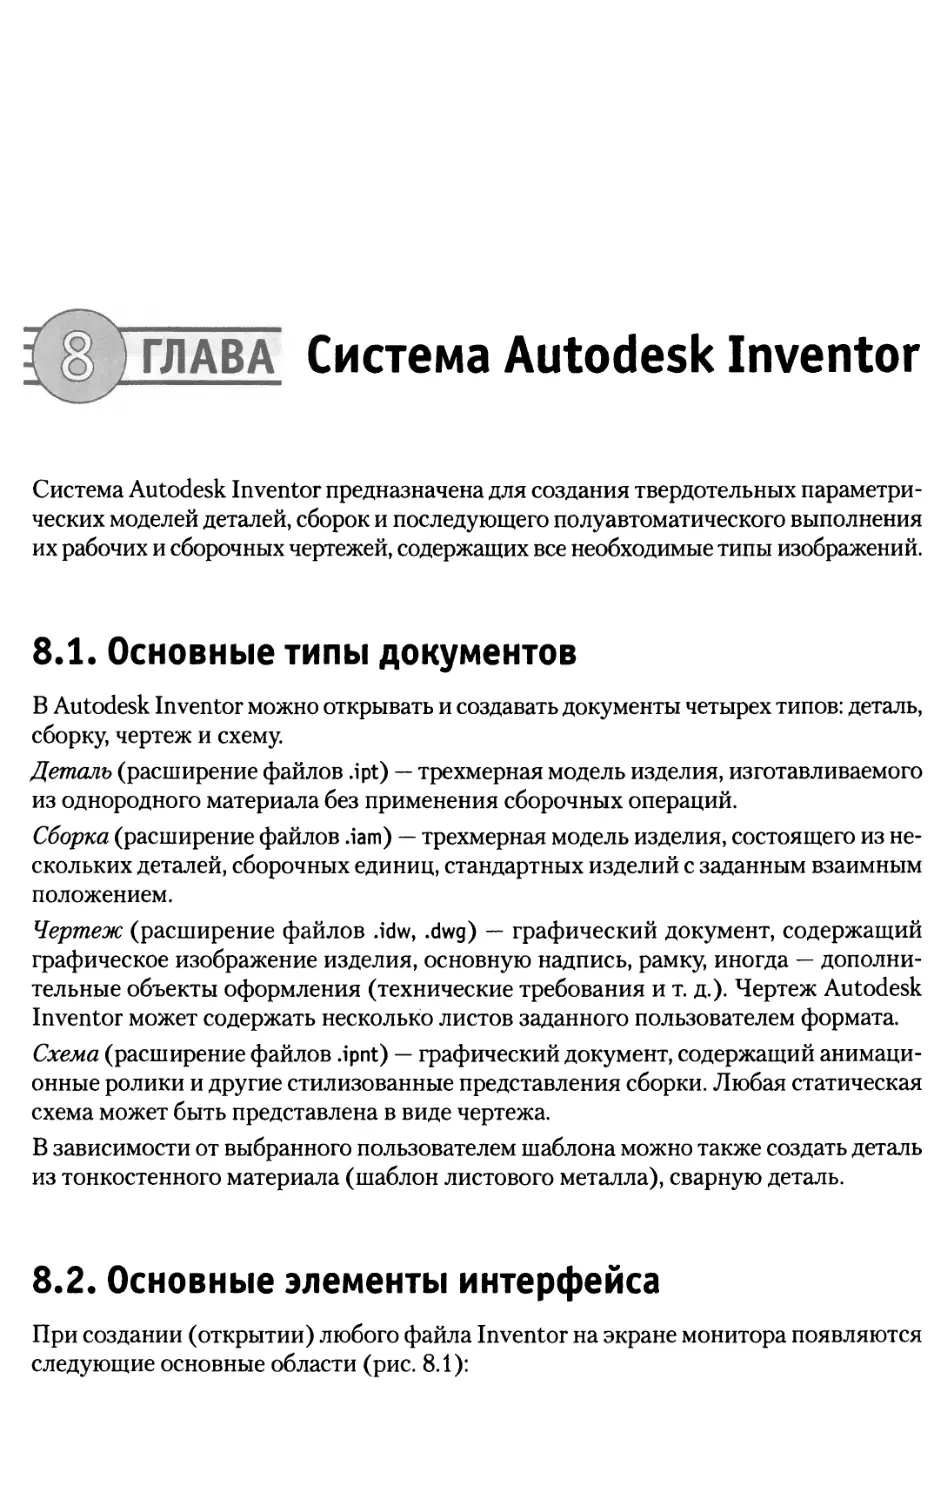 Глава 8. Система Autodesk Inventor
8.2. Основные элементы интерфейса